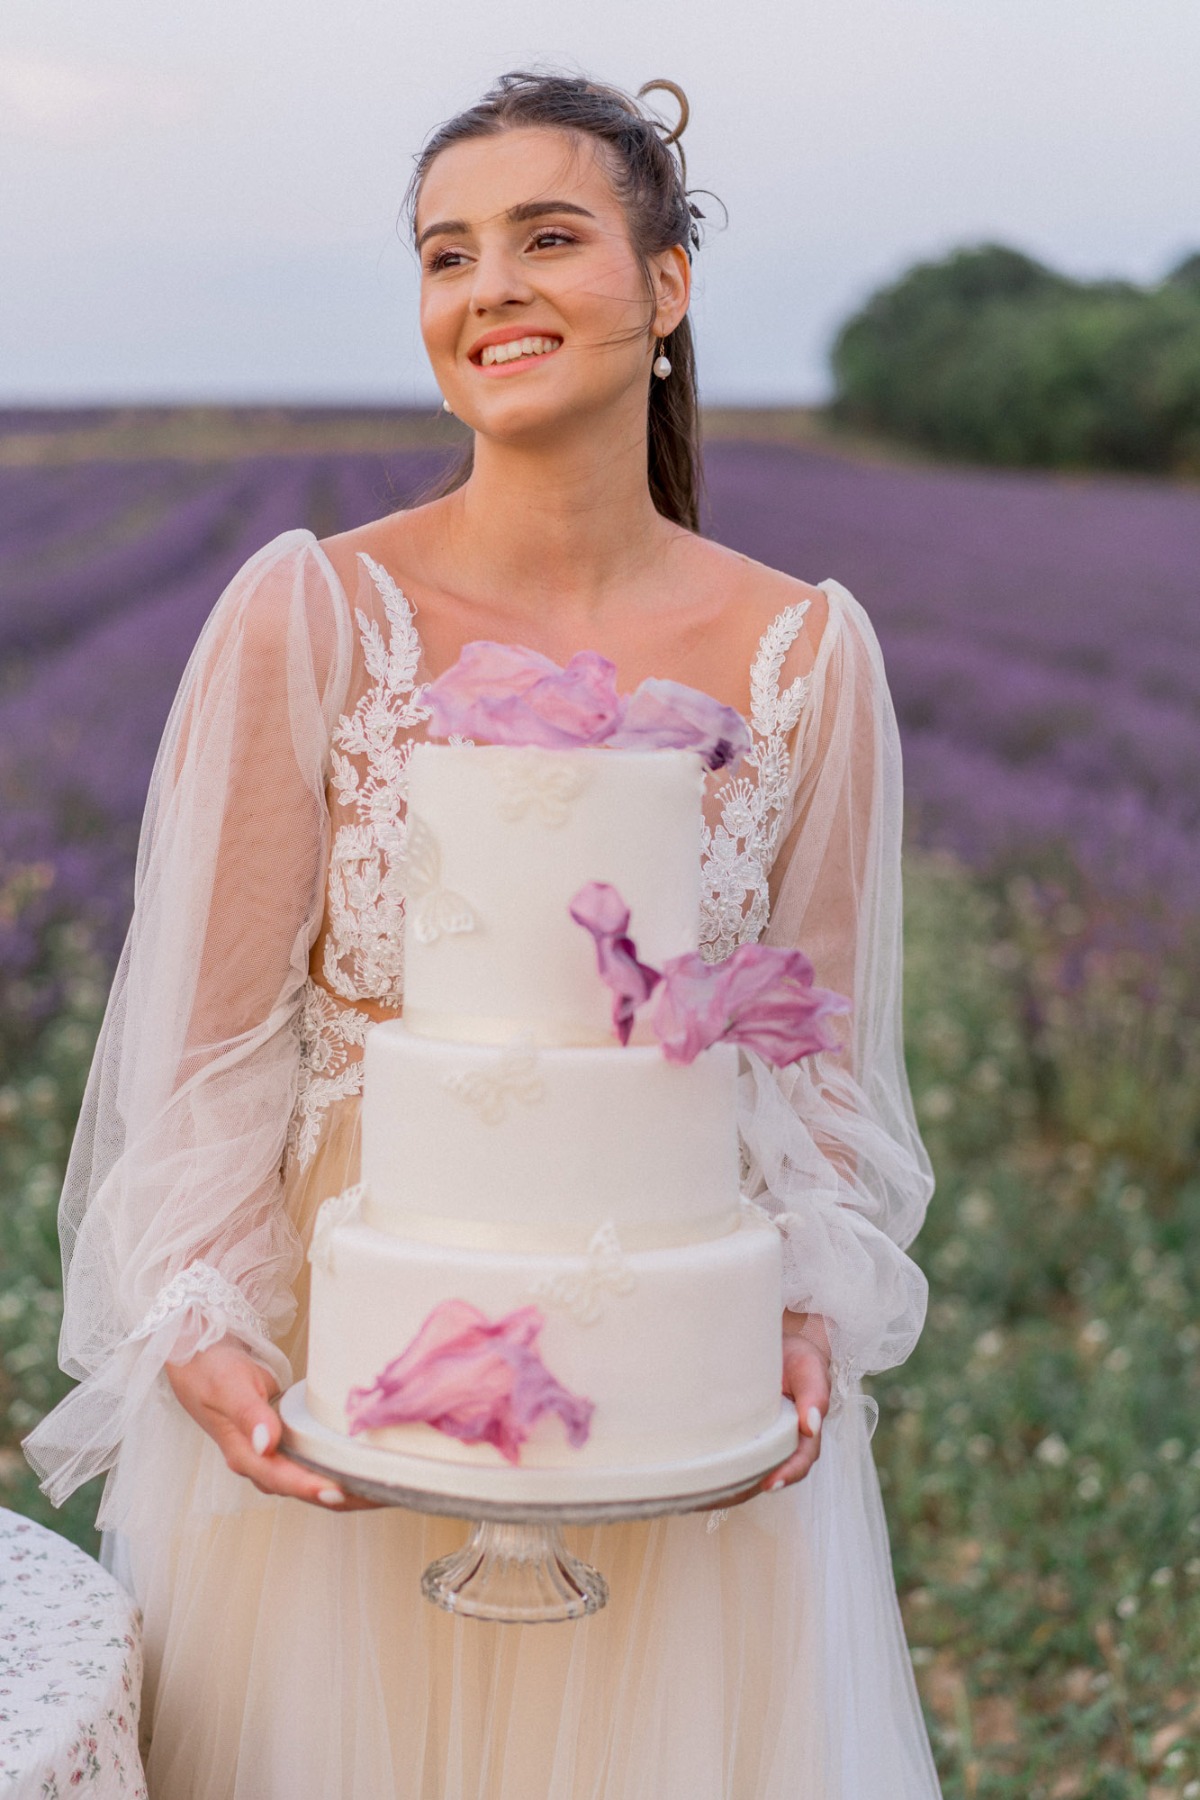 Bride holding wedding cake 